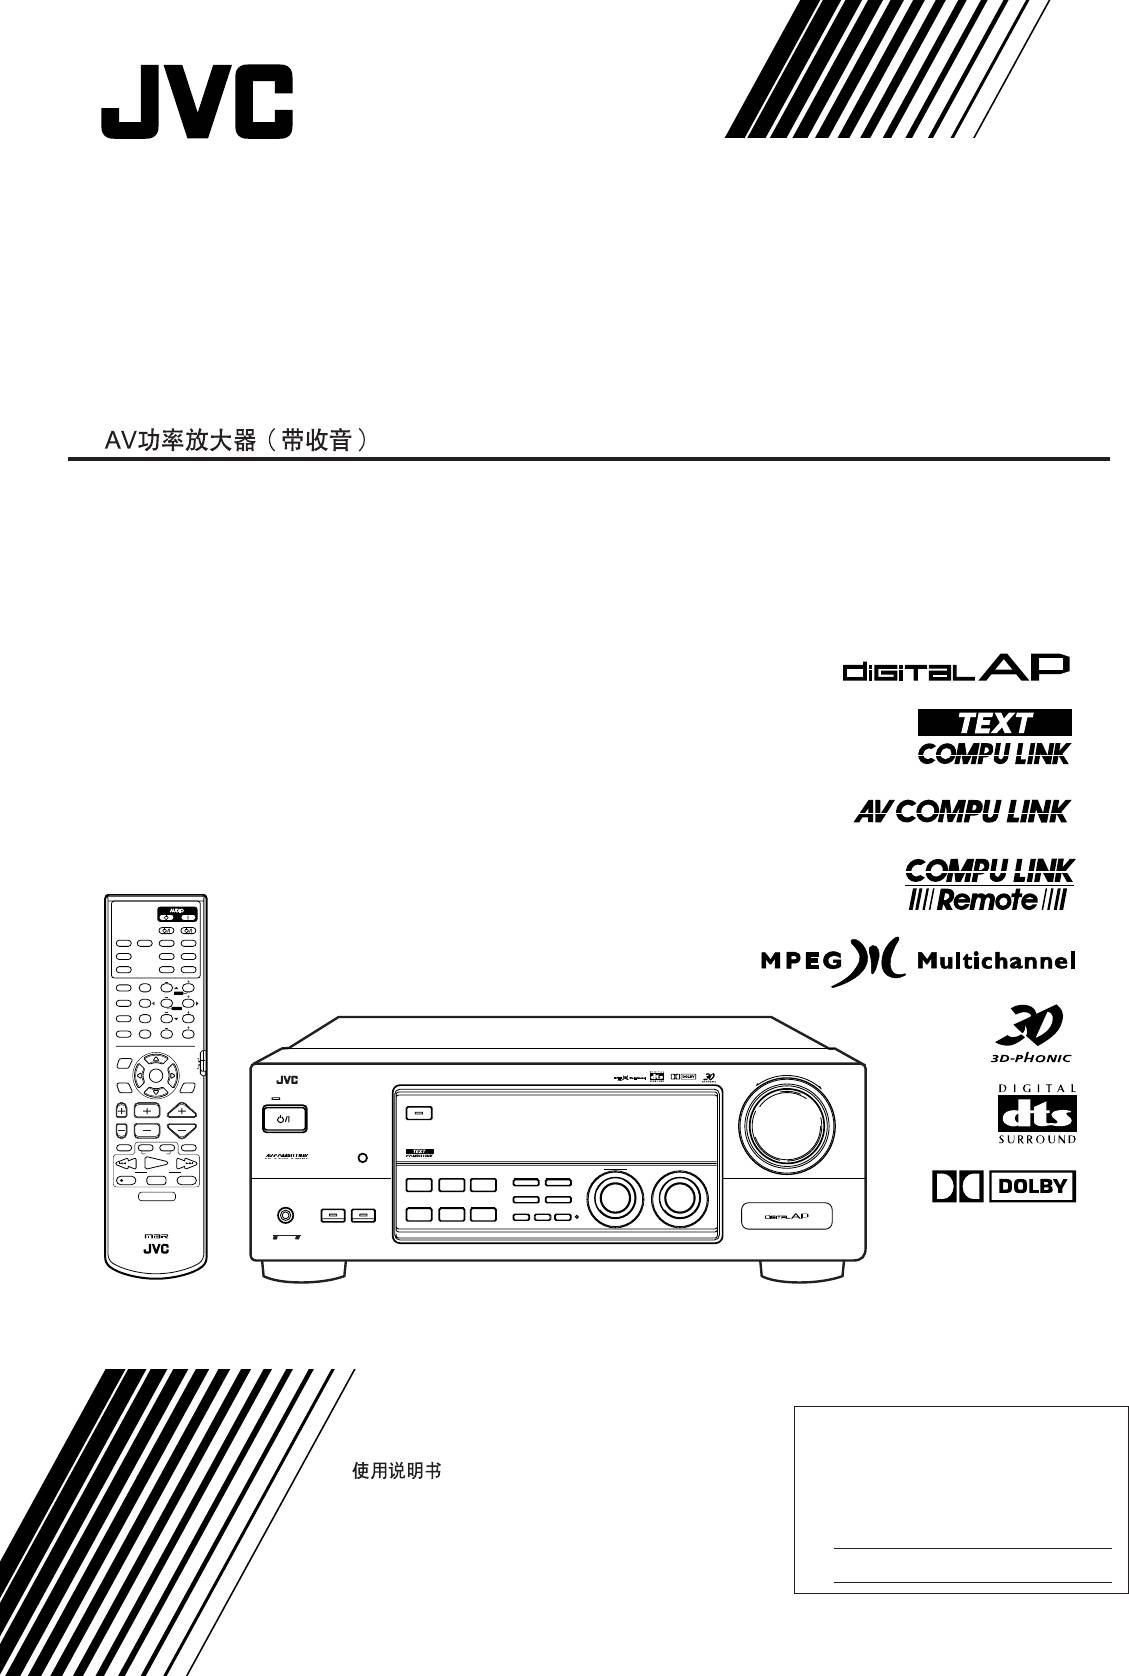 JVC RX-7001P (PGD)